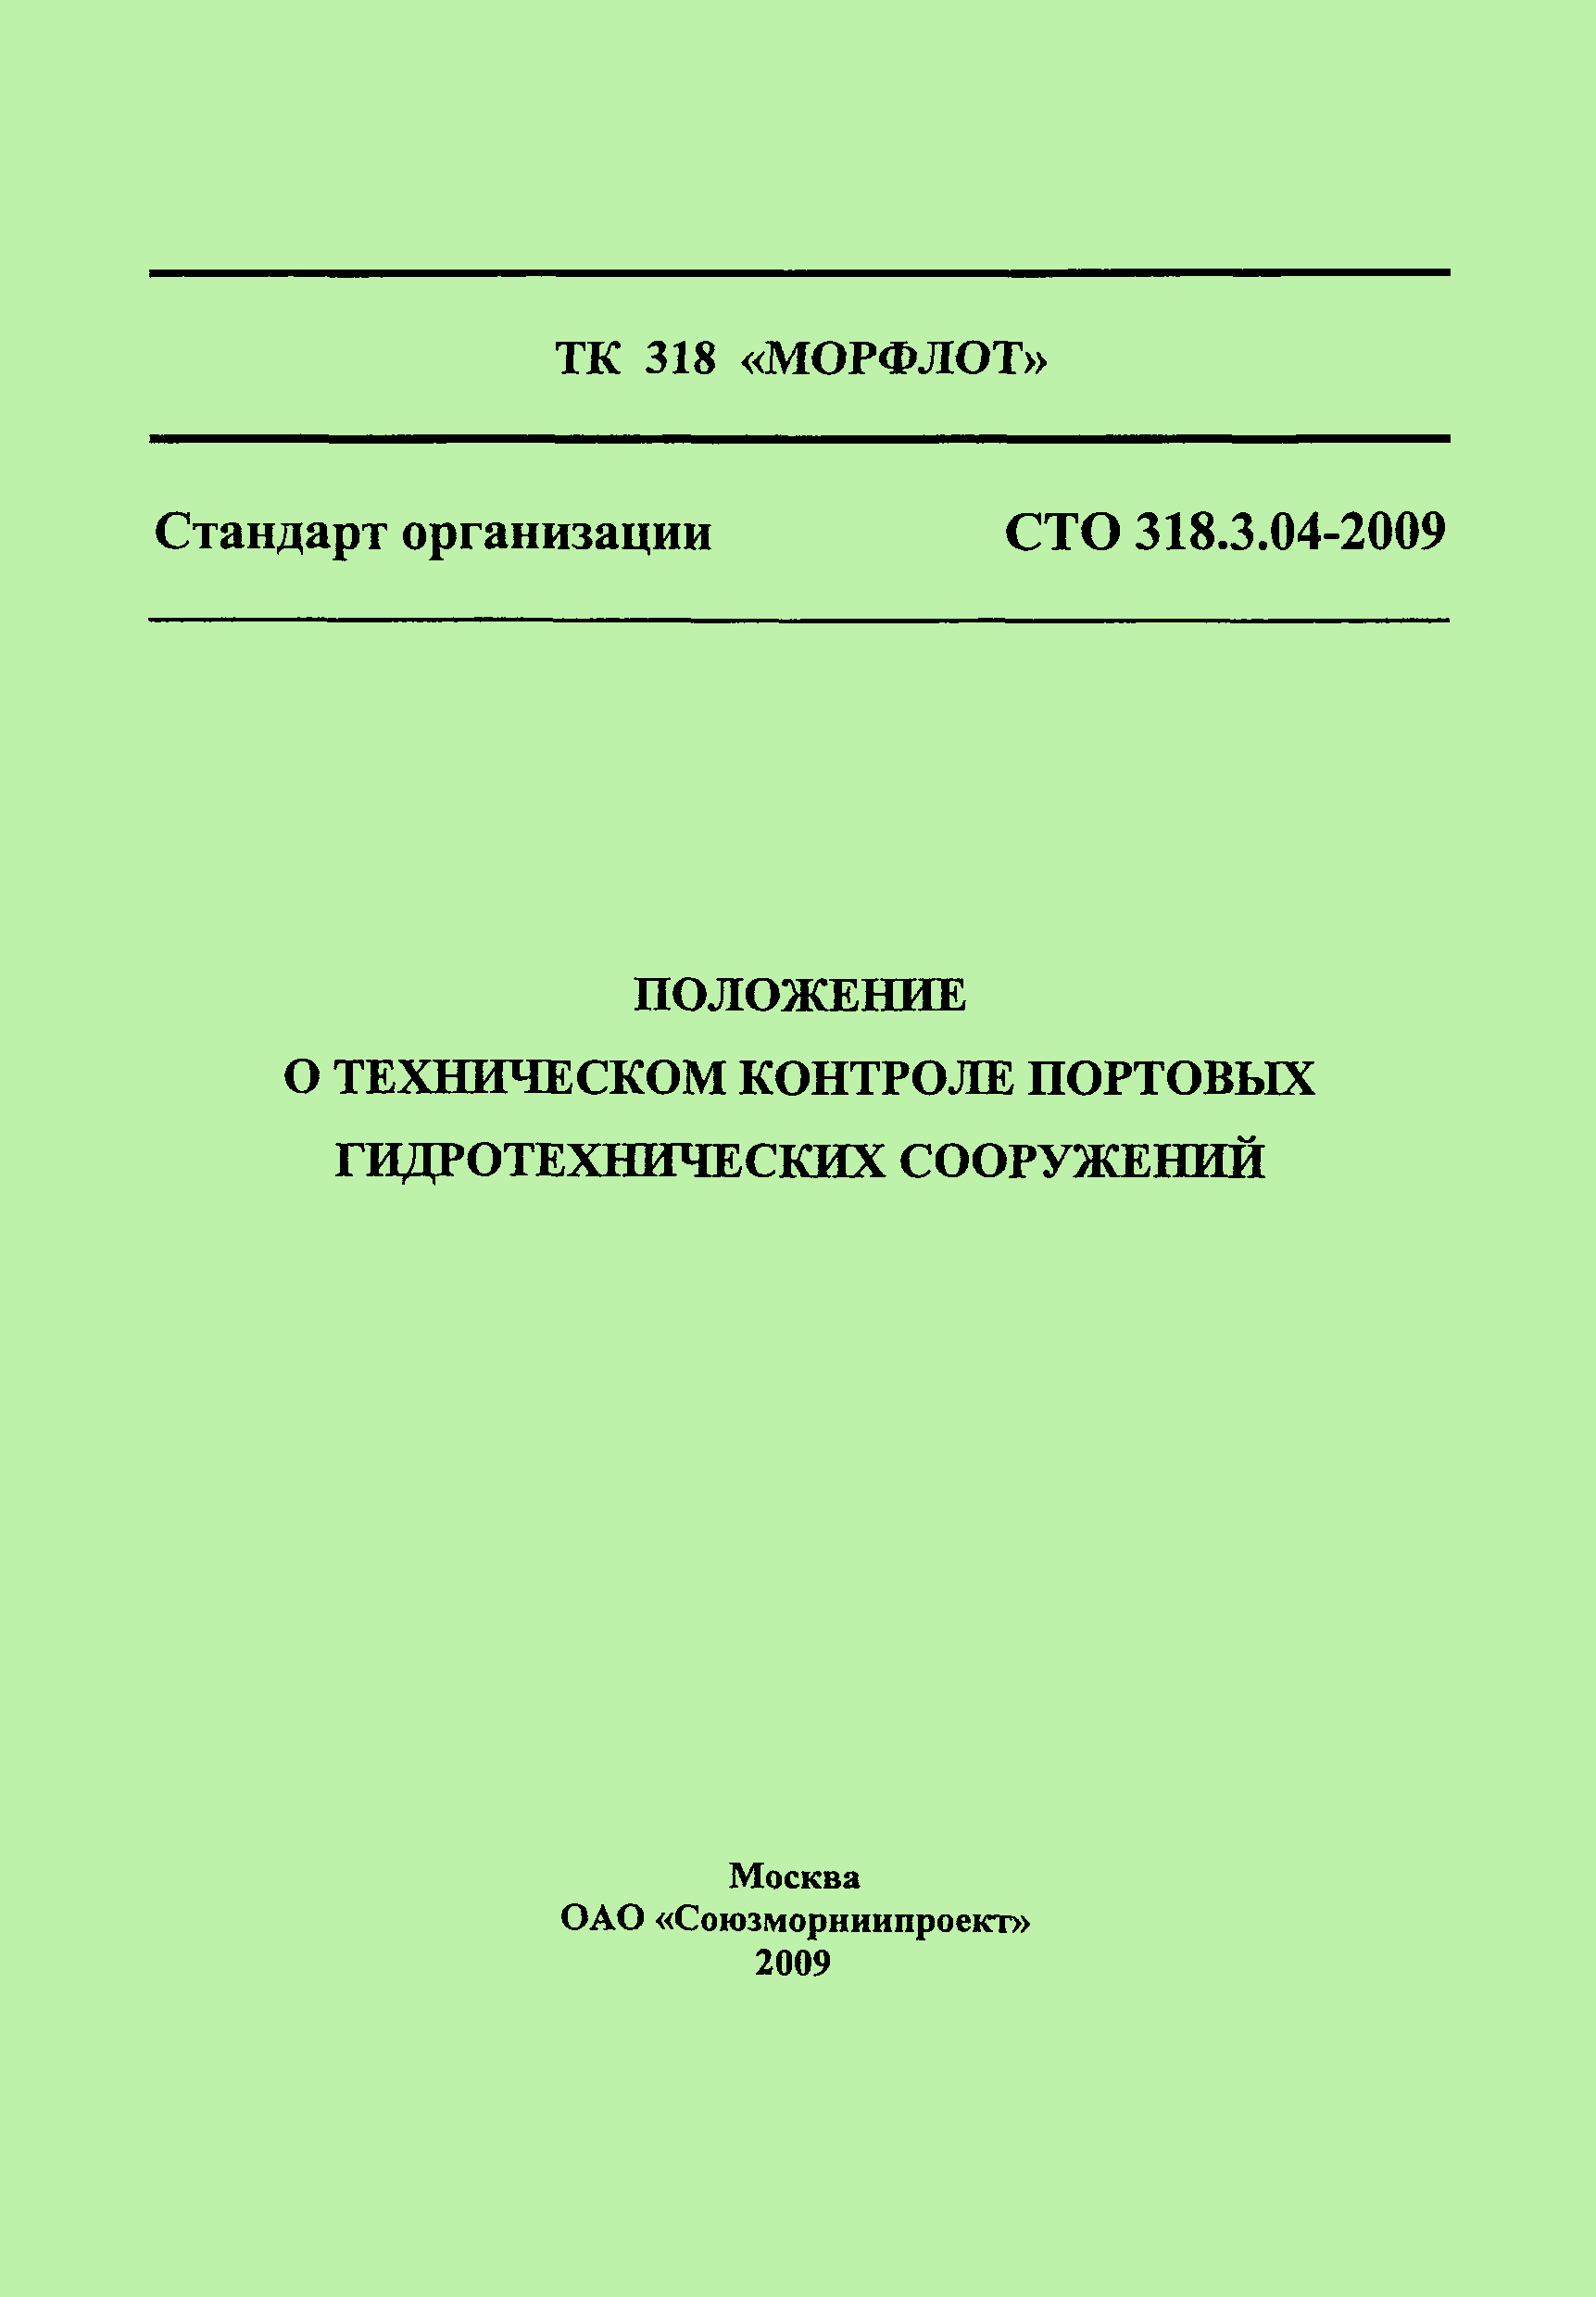 СТО 318.3.04-2009